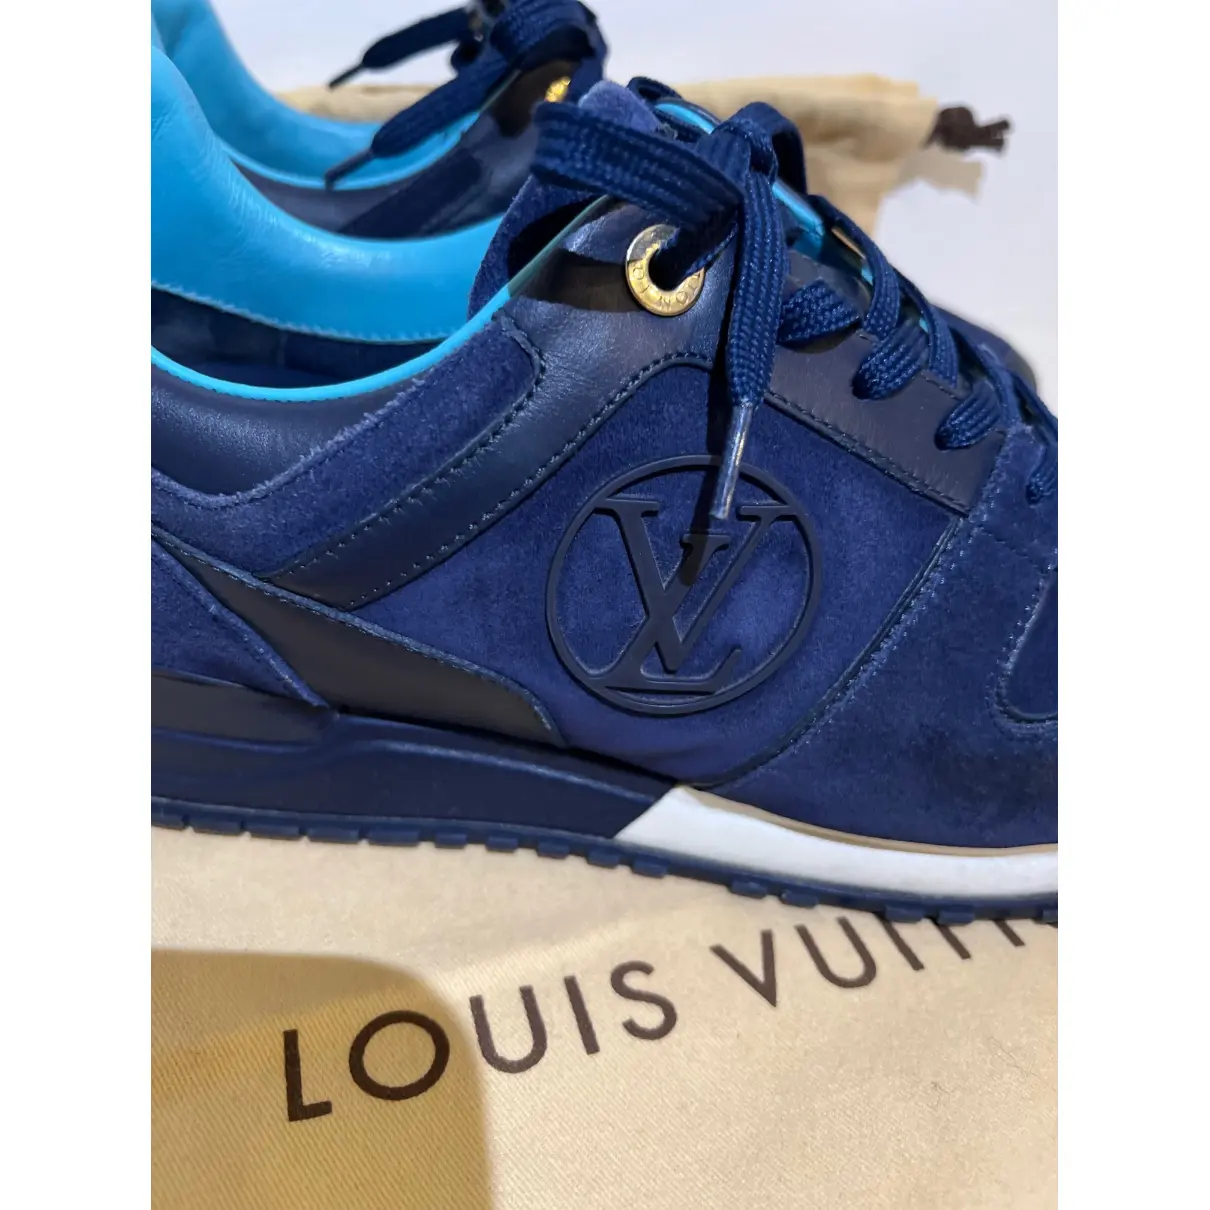 Run Away trainers Louis Vuitton